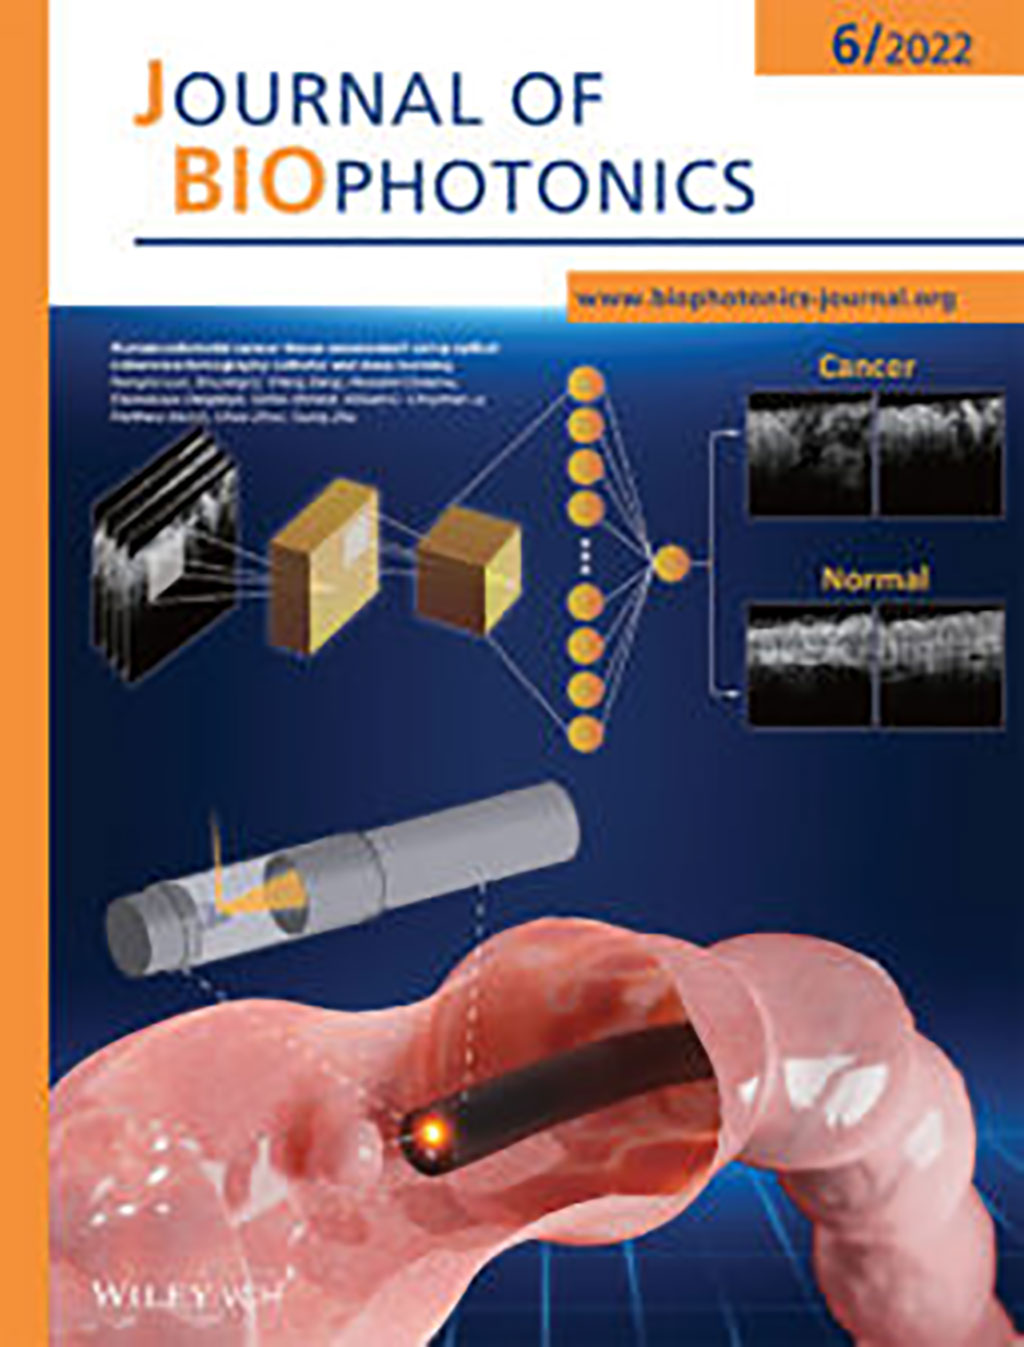 Imagen: Los resultados se publicaron en la edición de junio de la revista Journal of Biophotonics (Fotografía cortesía de la Universidad de Washington en St. Louis)